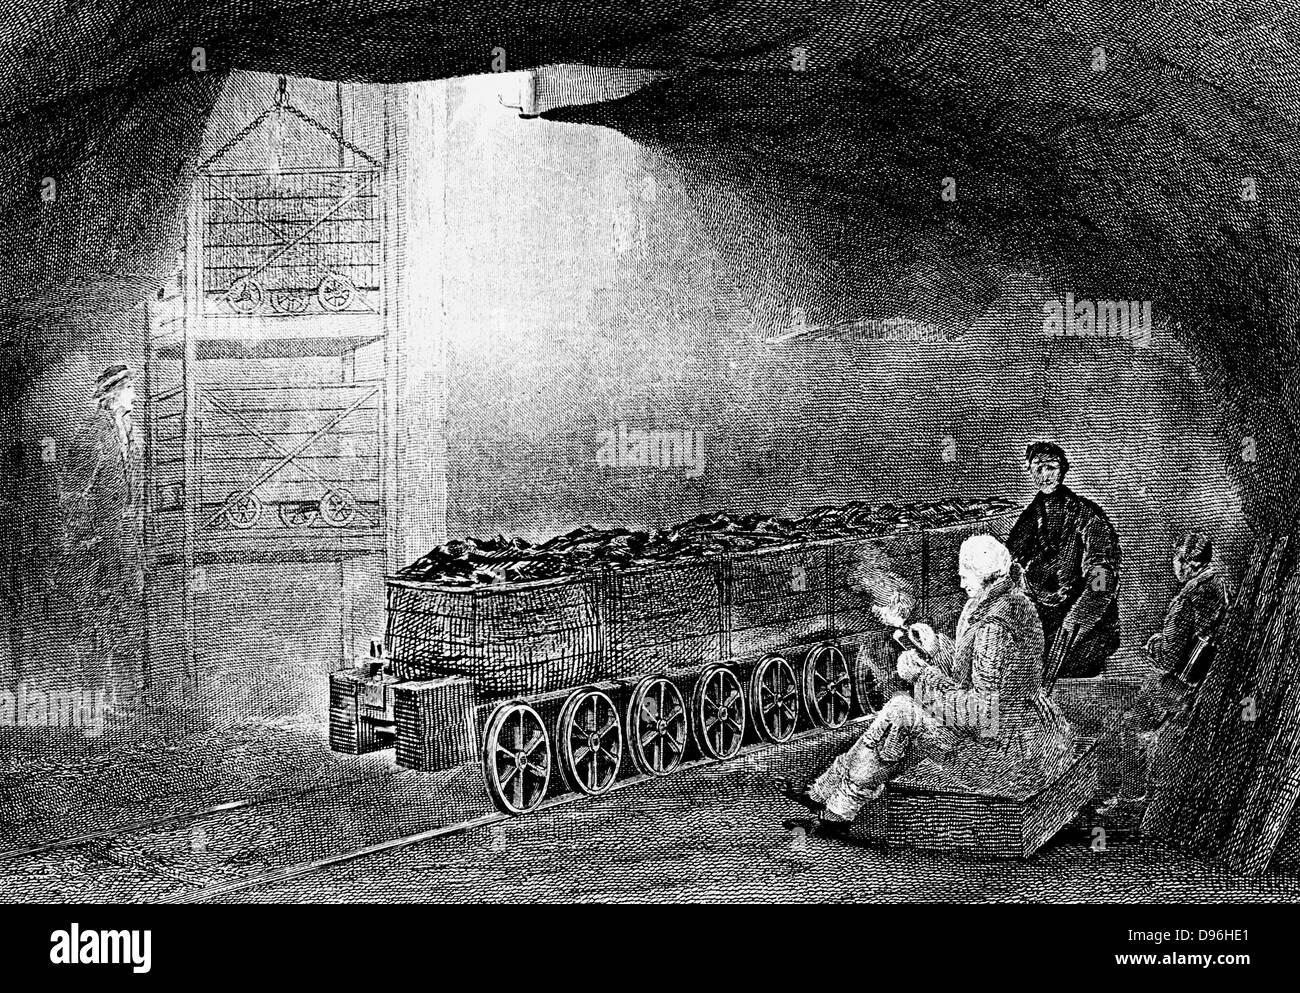 Bergbau: Unterseite der Grube Welle mit dem Zug von Wagen warten, gehoben zu werden. Mit Flansch, Räder auf Kohle wagen. Von W Fordyce, "eine Geschichte von Kohle, Koks, Kohle Felder...', London, 1860. Gravur. Stockfoto